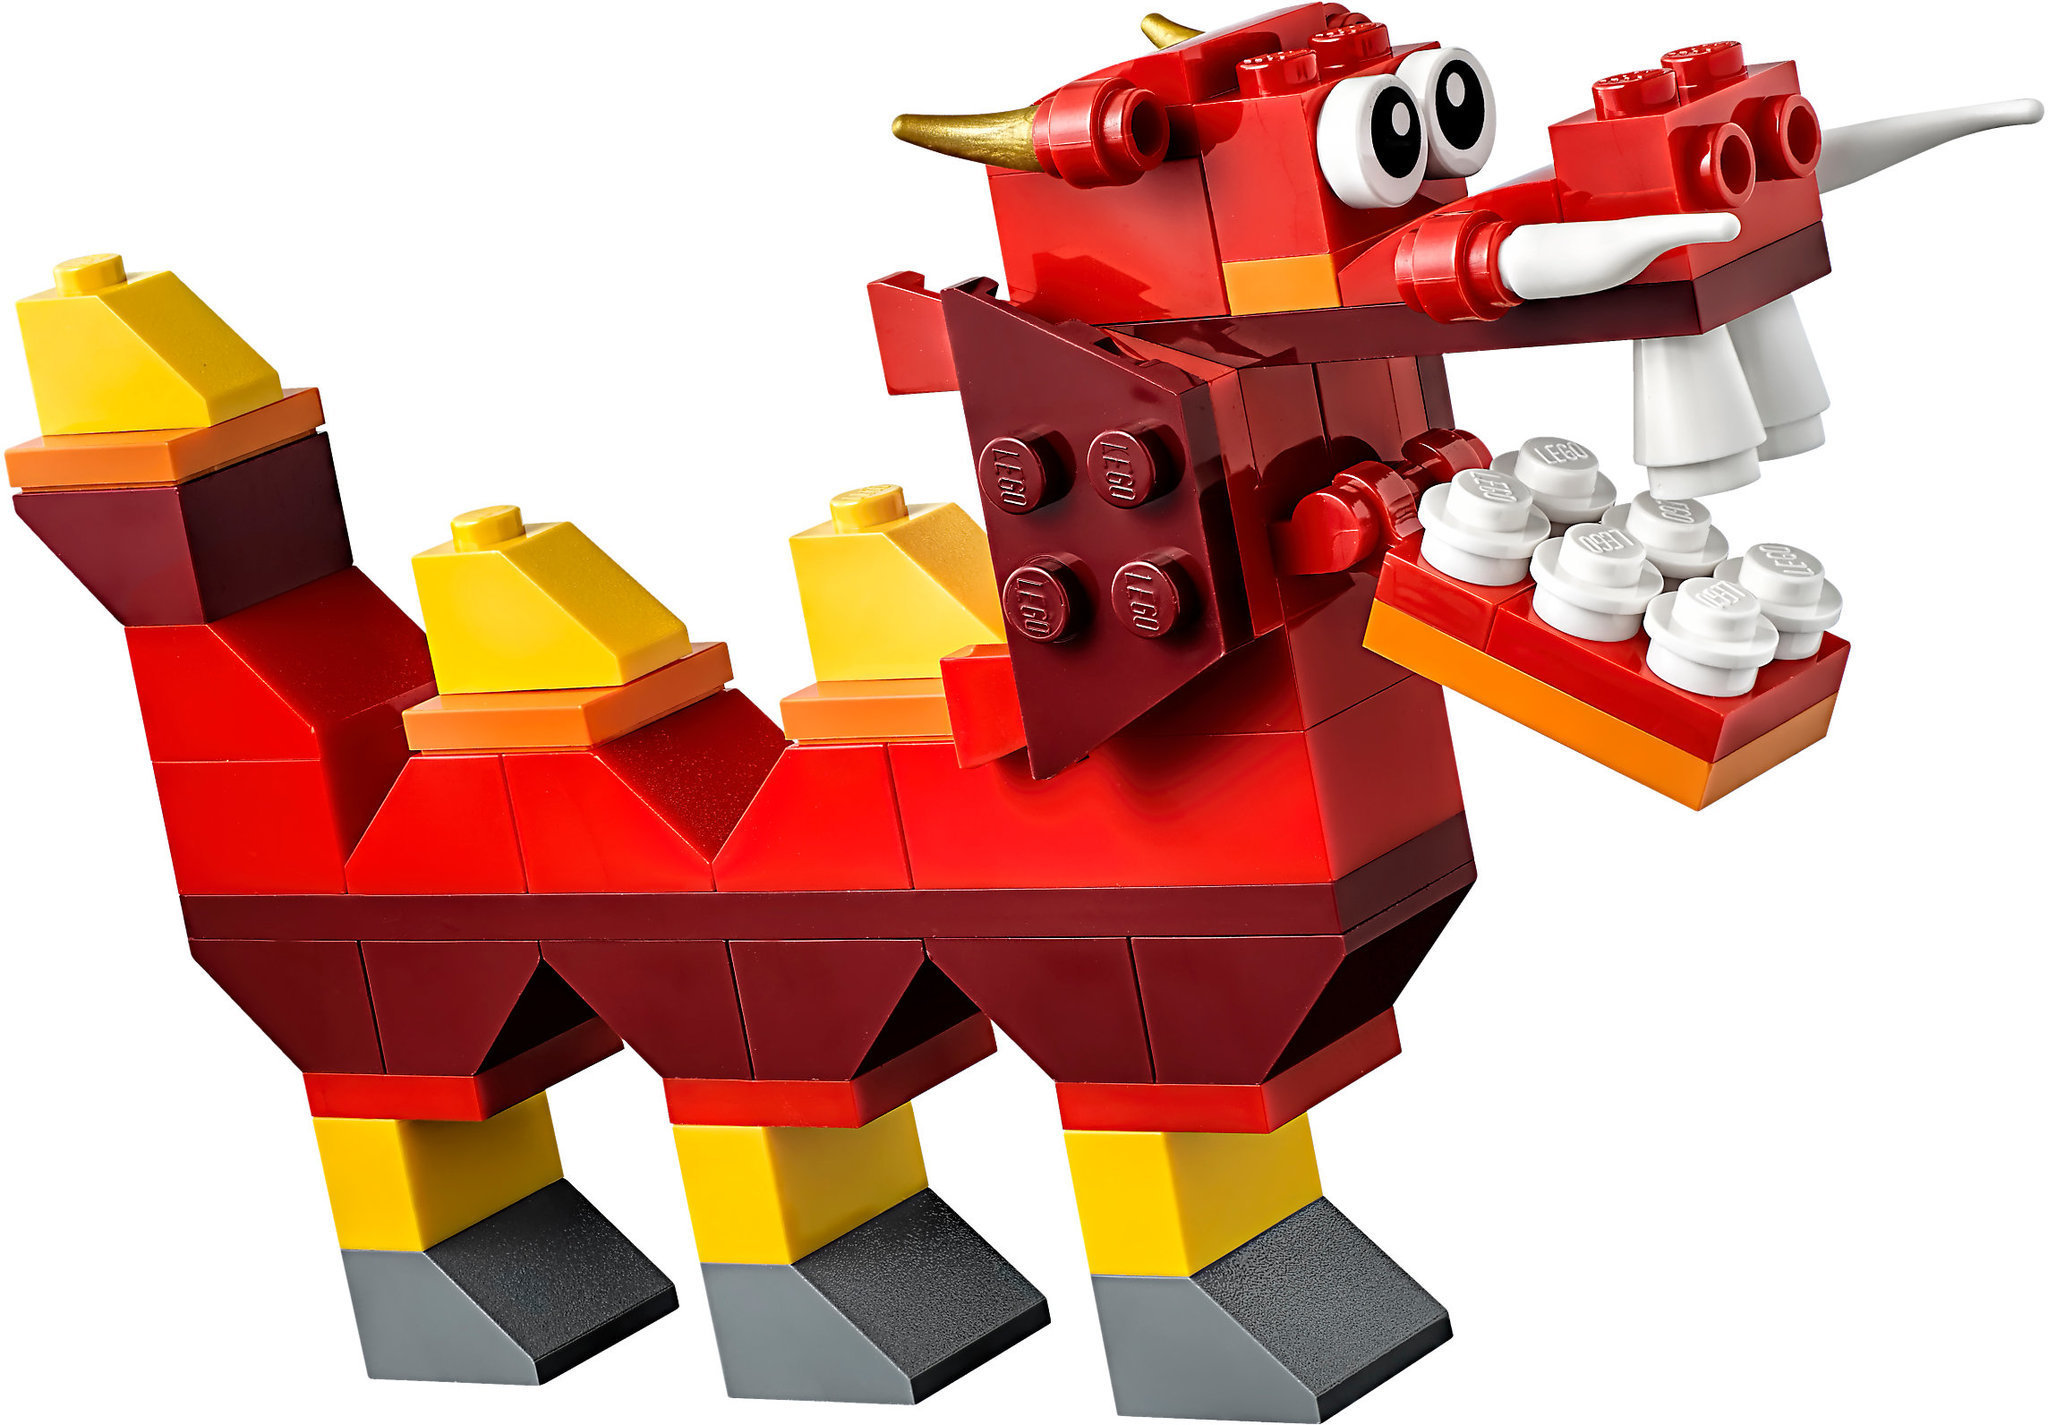 LEGO Classic (10707). Scatola della Creatività Rossa - LEGO - Classic - Set  mattoncini - Giocattoli